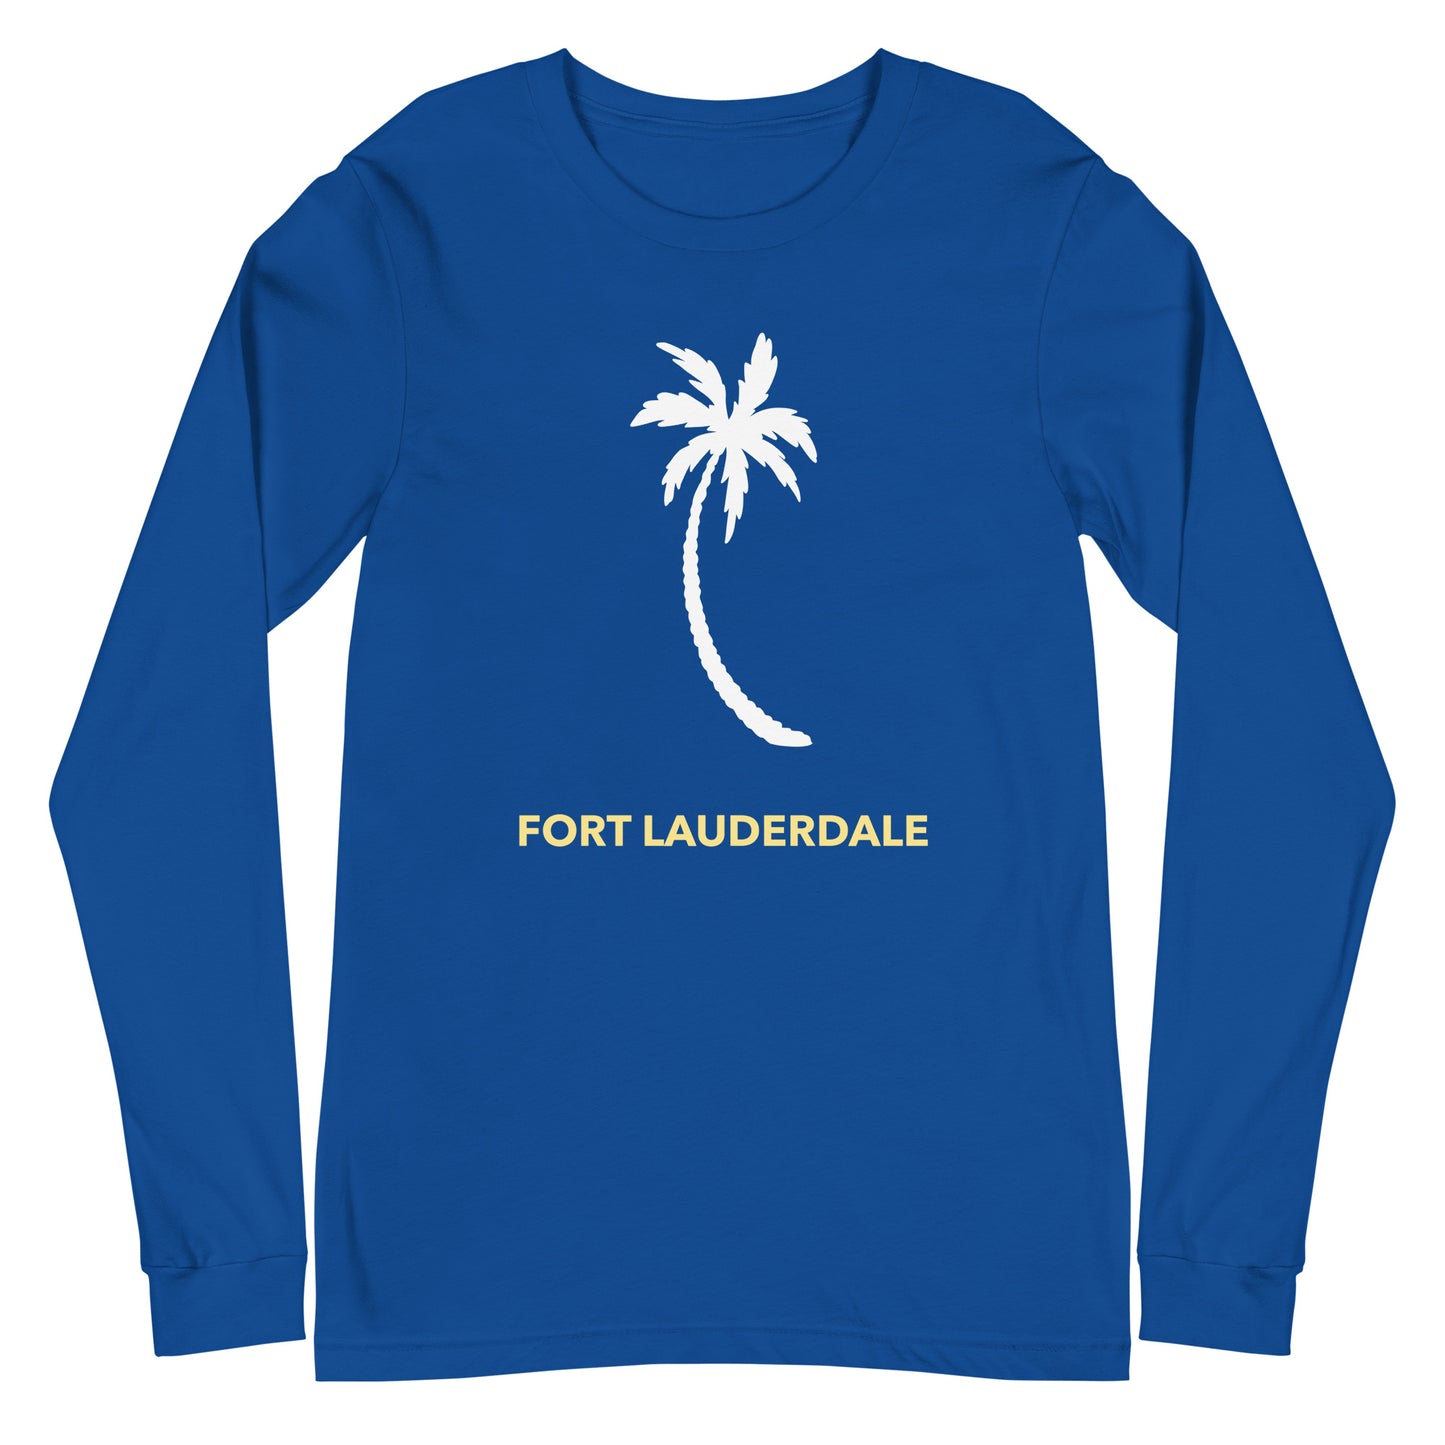 Fort Lauderdale Long-Sleeve Tee